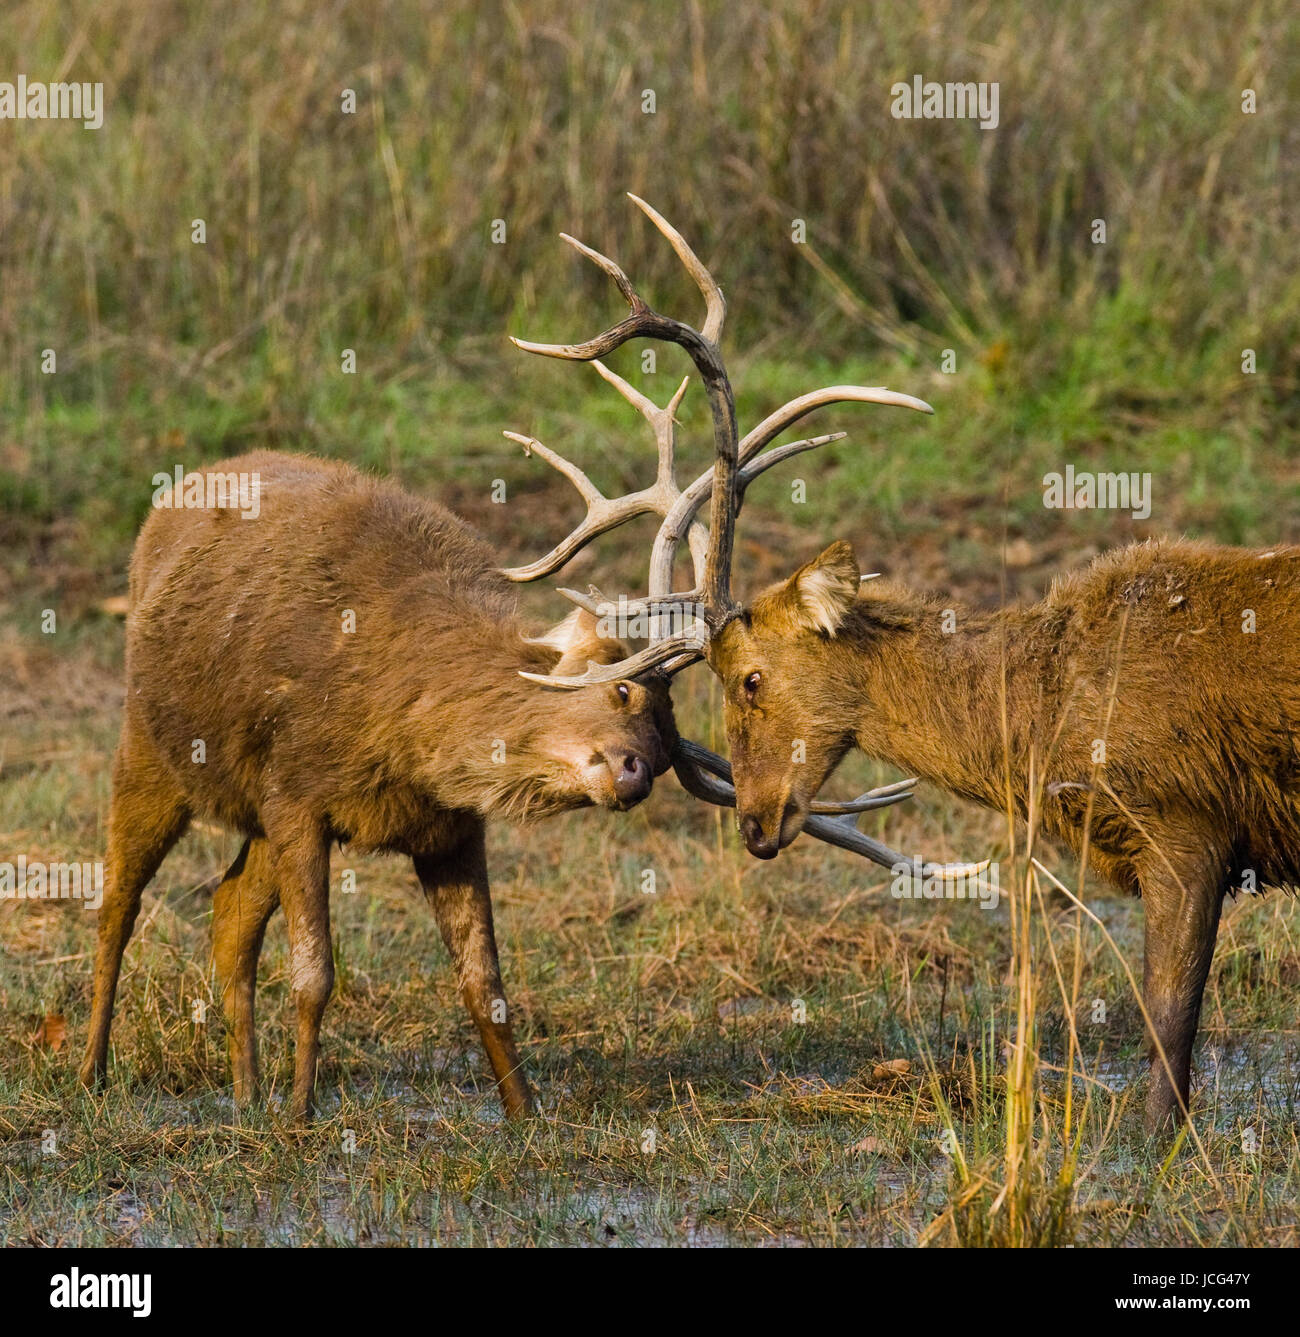 Zwei Hirsche kämpfen sich in der Paarungszeit in freier Wildbahn. Indien. Nationalpark. Stockfoto